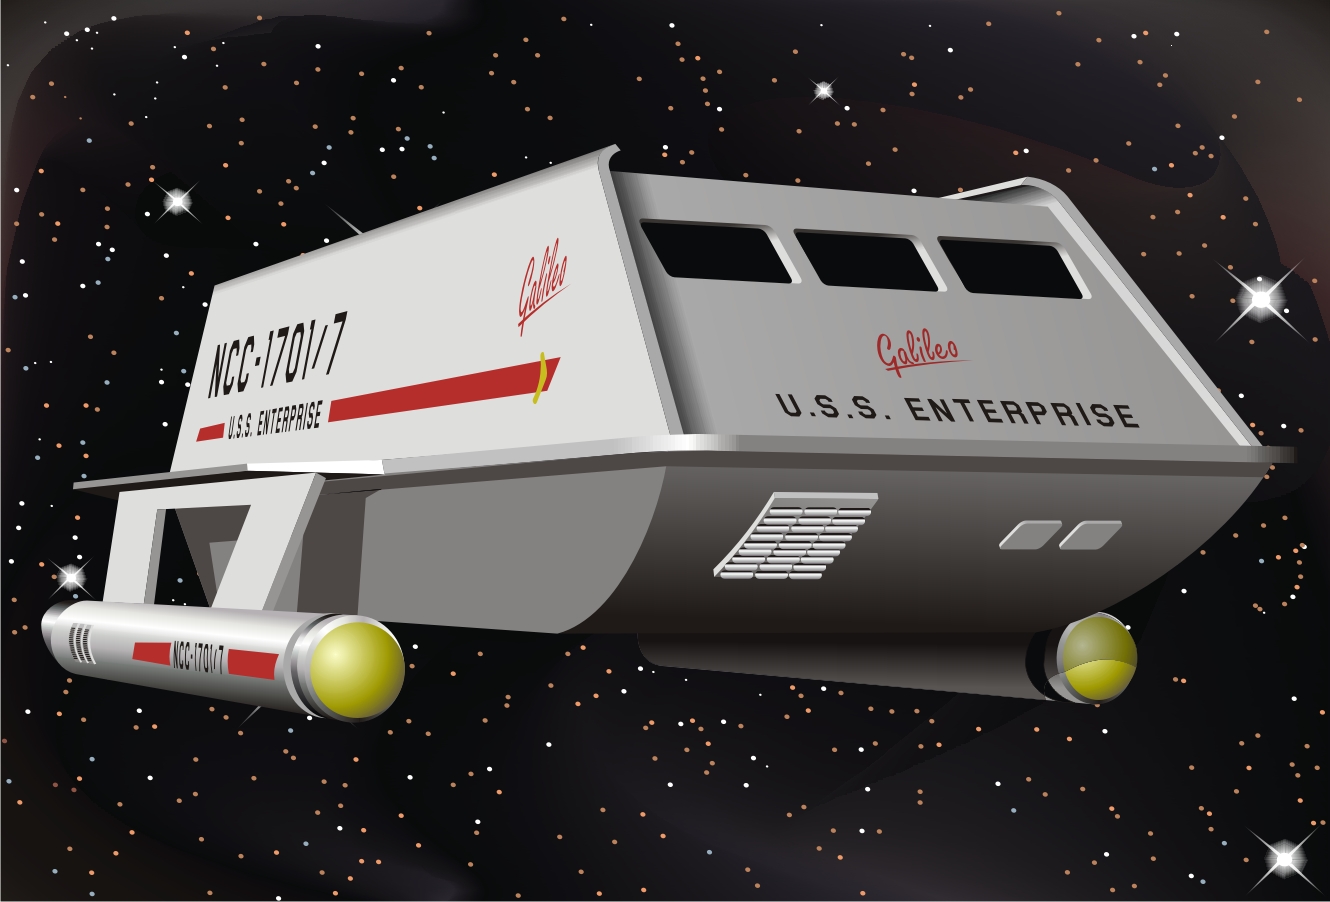 star trek shuttlecraft galileo